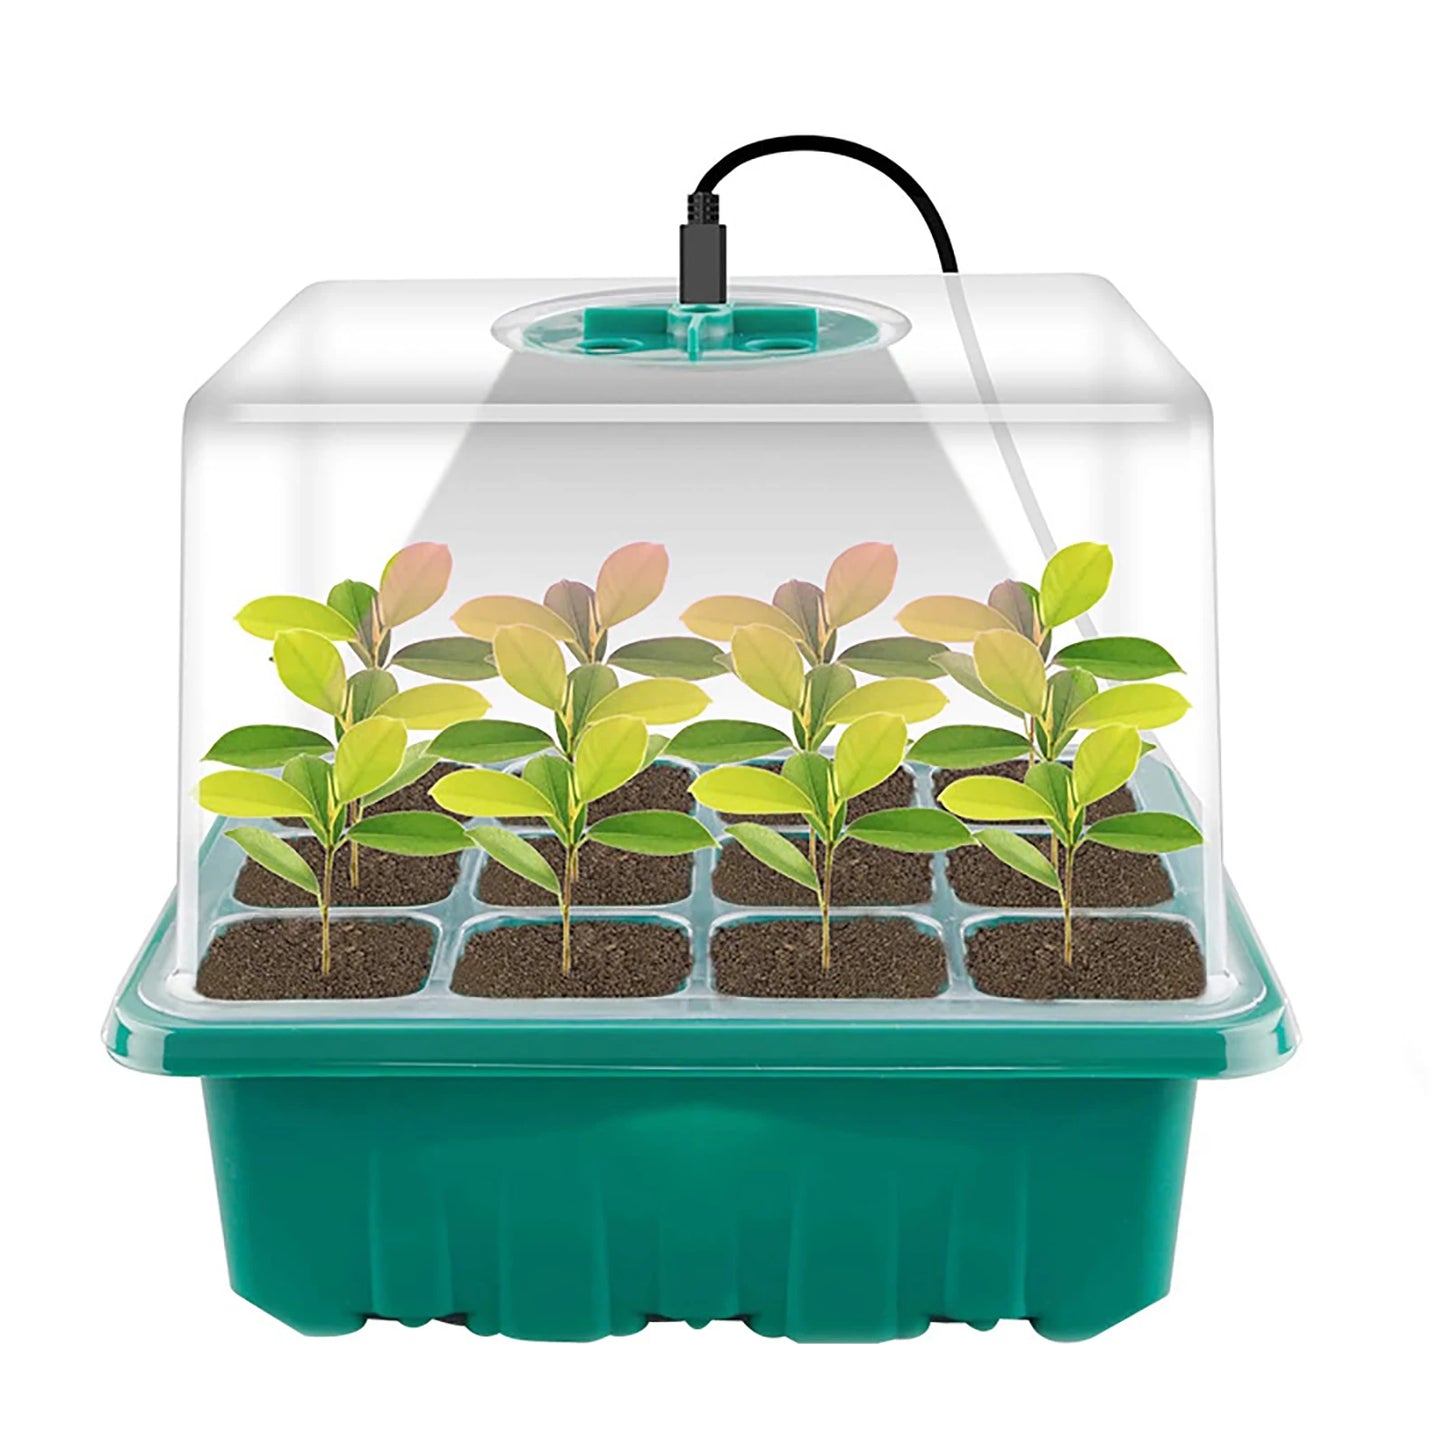 LED rast svjetlost 6/12 rupe sjemenke Starter ladice biljke uzgajaju kutije za sadnice za sadnice klijanje u zatvorenom vrtlarstvu Alat za klijanje